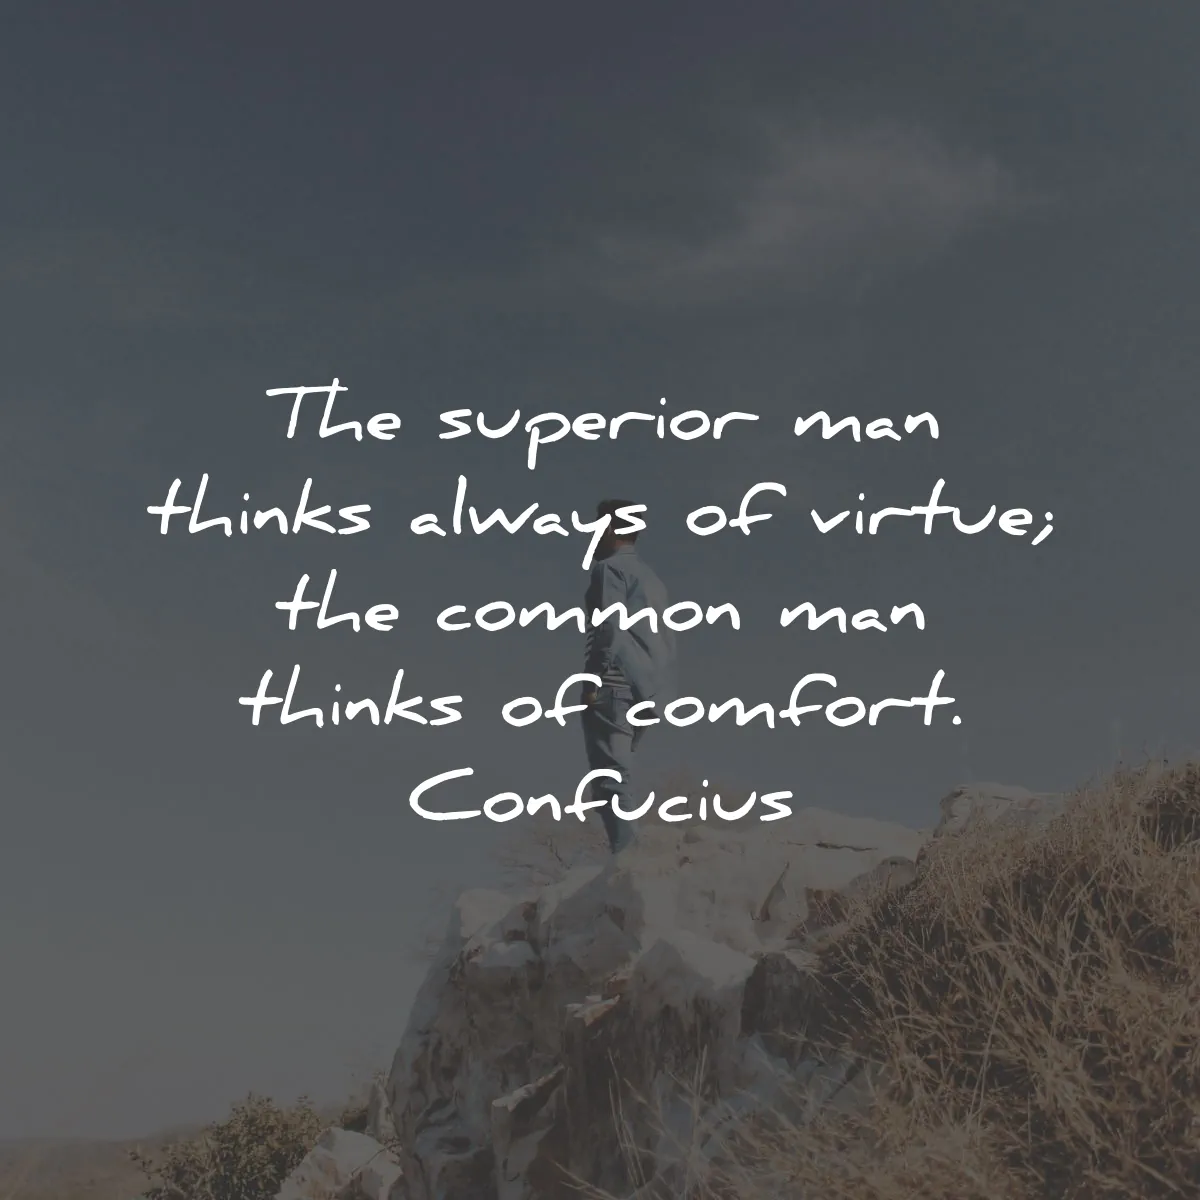 Конфуций цитира превъзходен човек добродетел комфорт мъдрост